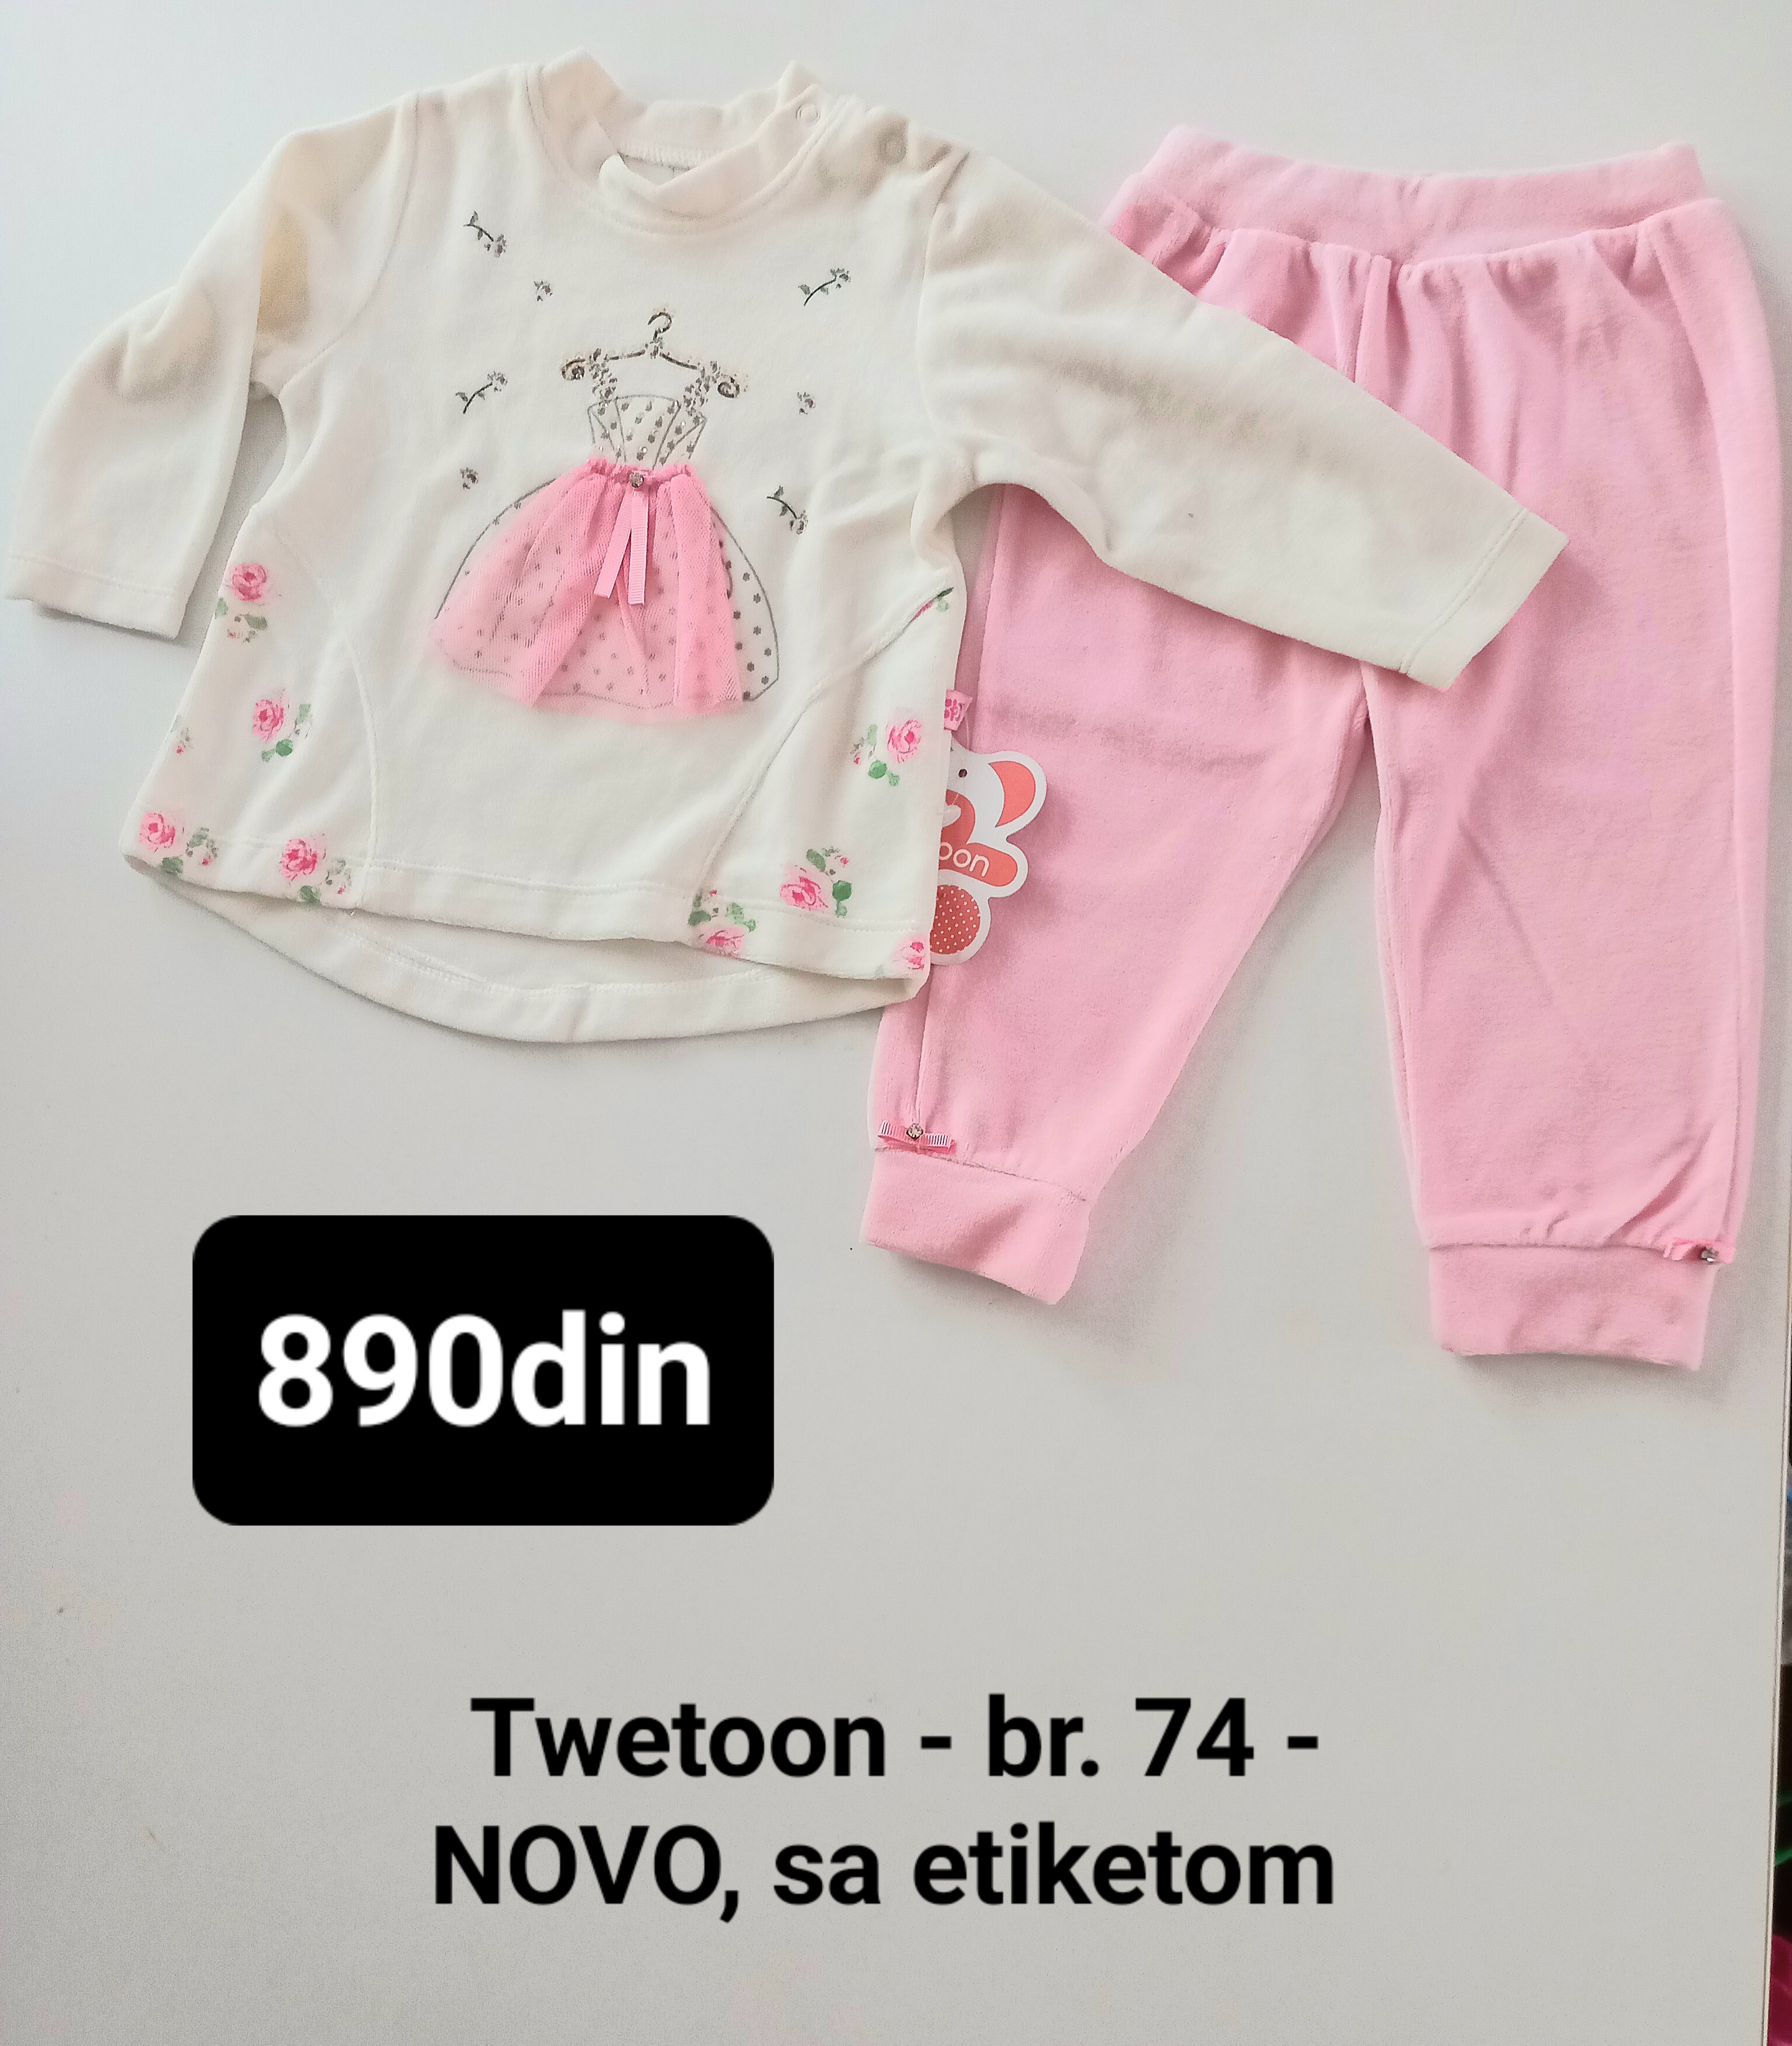 Twetoon trenerka za bebe devojčice roze br. 74 - NOVO